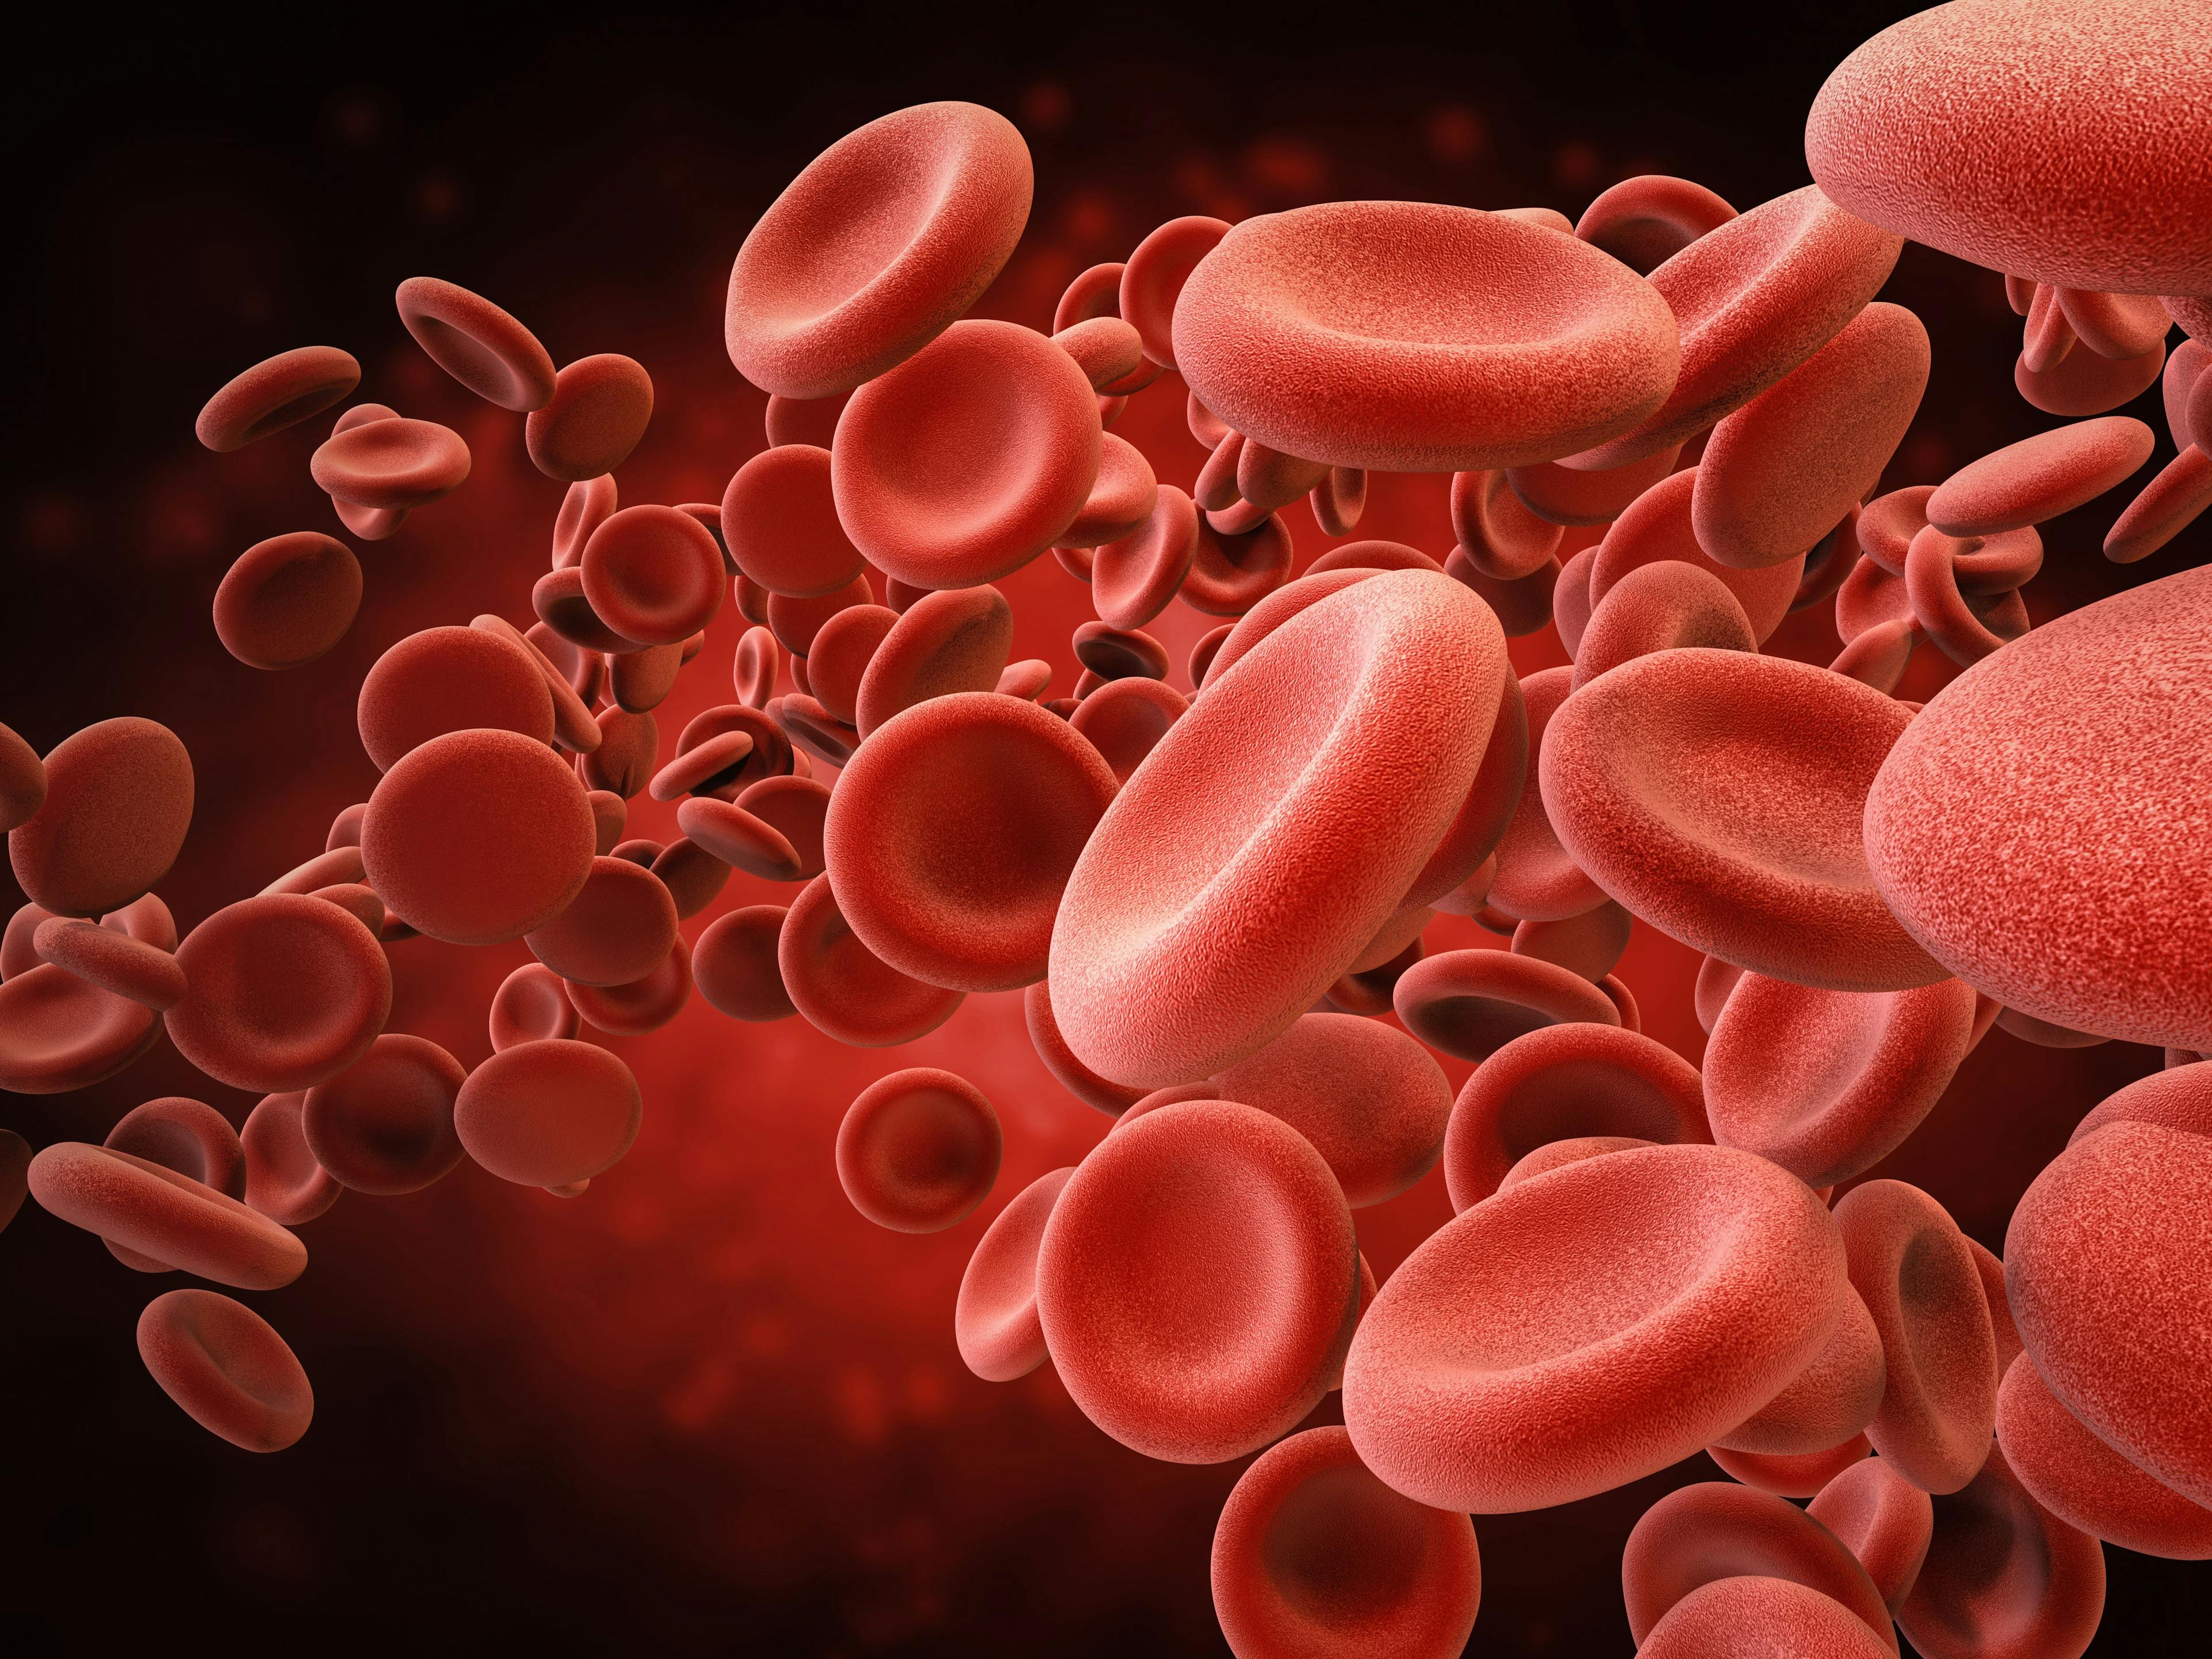 Tenecteplase Could Lower Bleeding Risk vs Alteplase in Acute Stroke